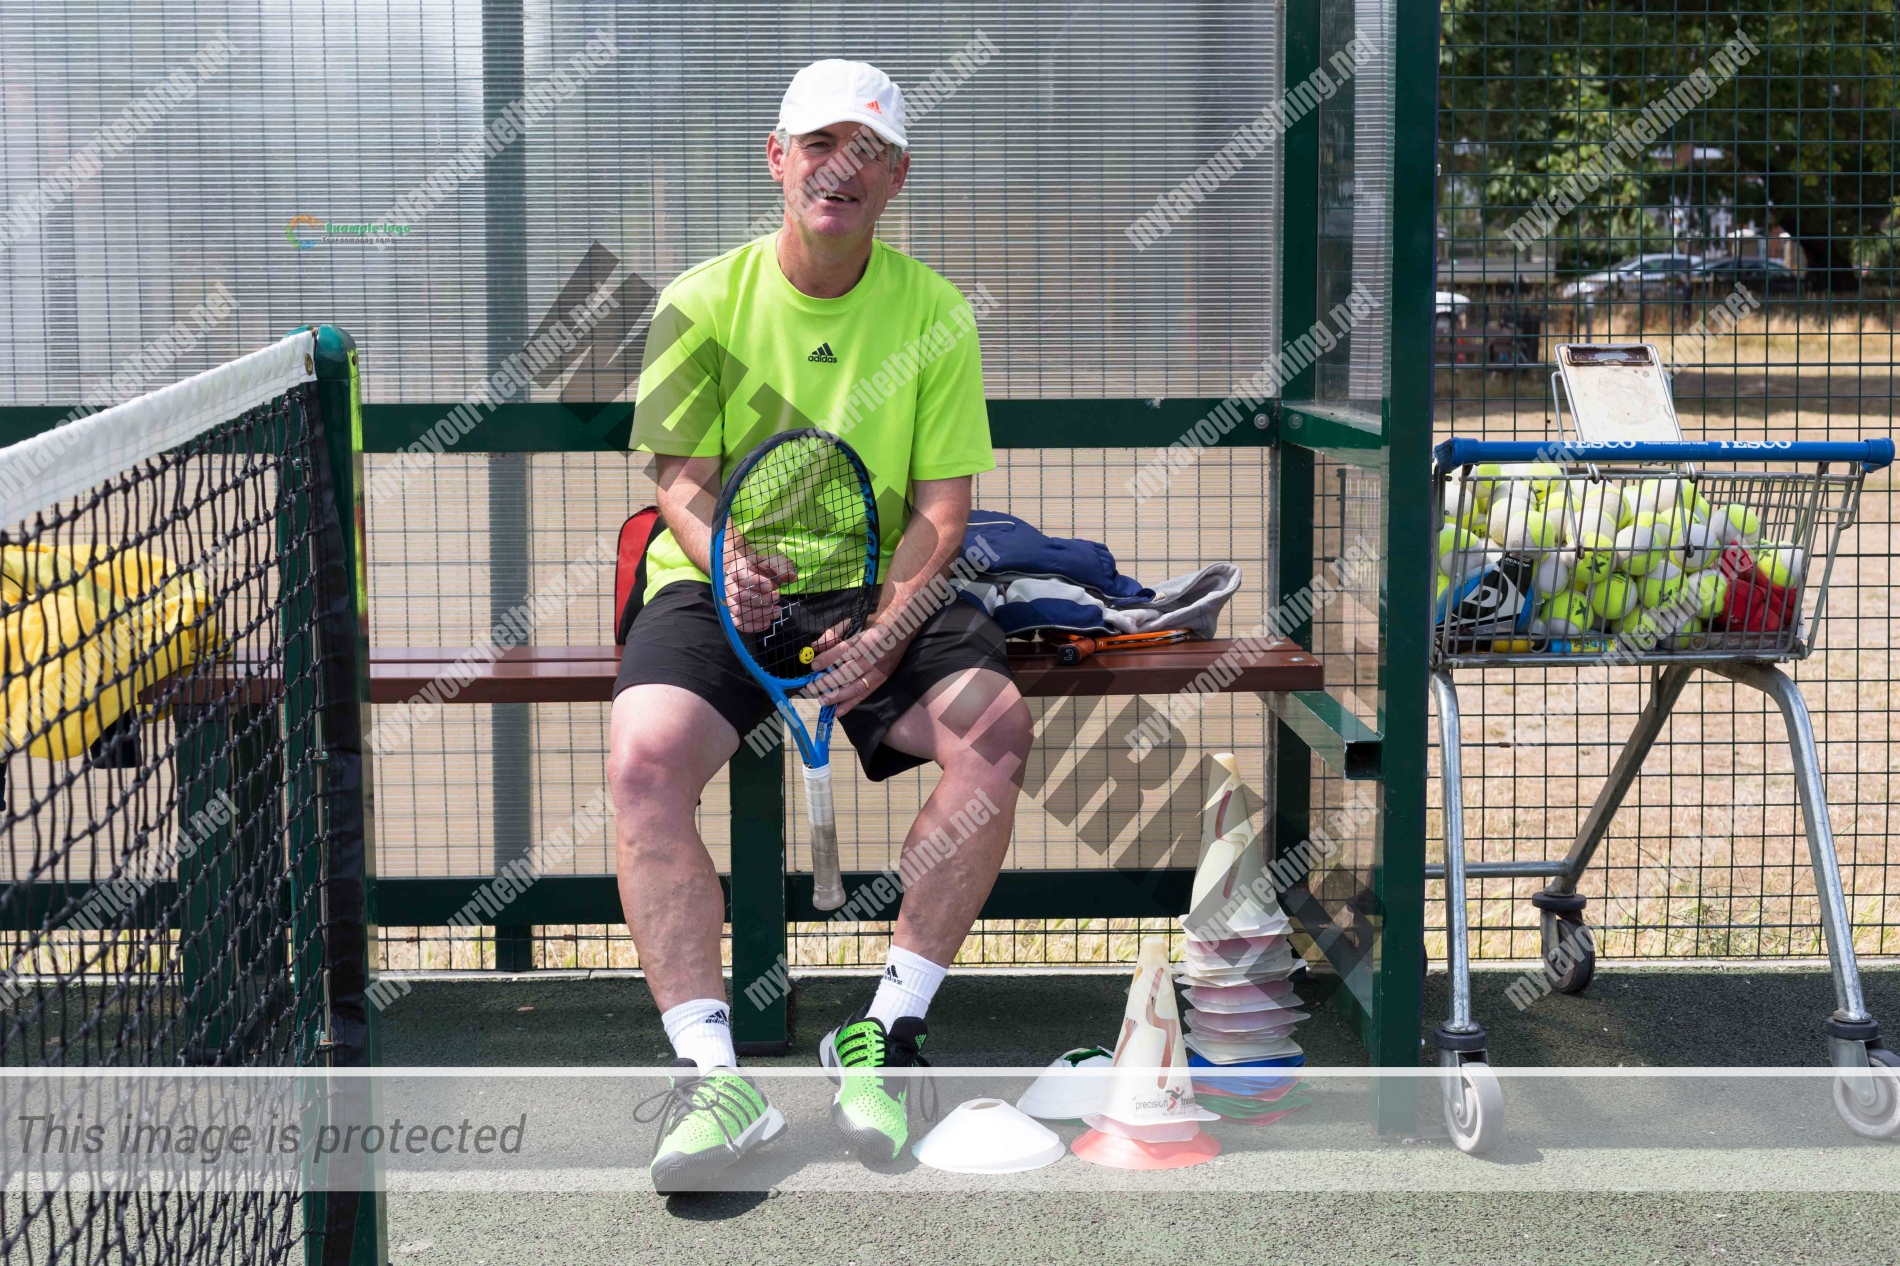 Tennis coach, Julian Cousins sitting on a bench at a tennis court holding a racket